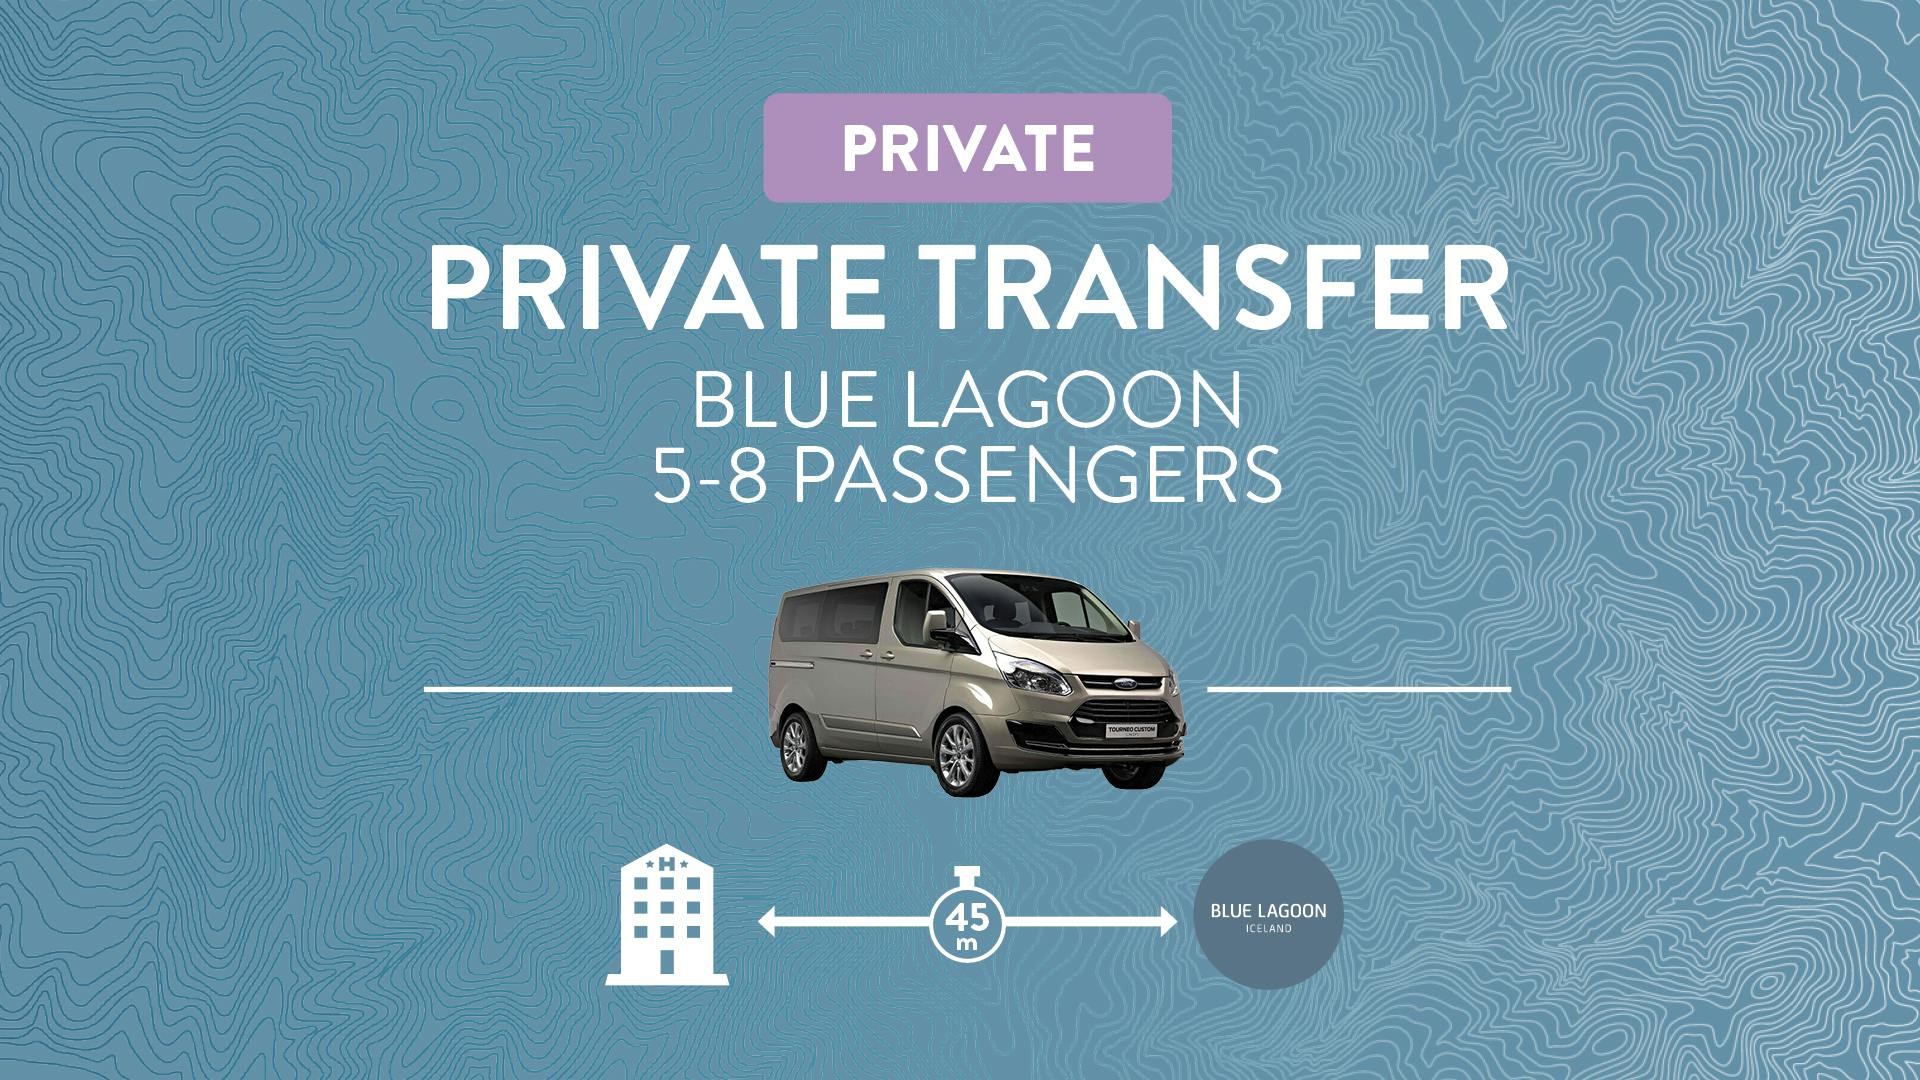 Blue Lagoon private transfer 5-8 person